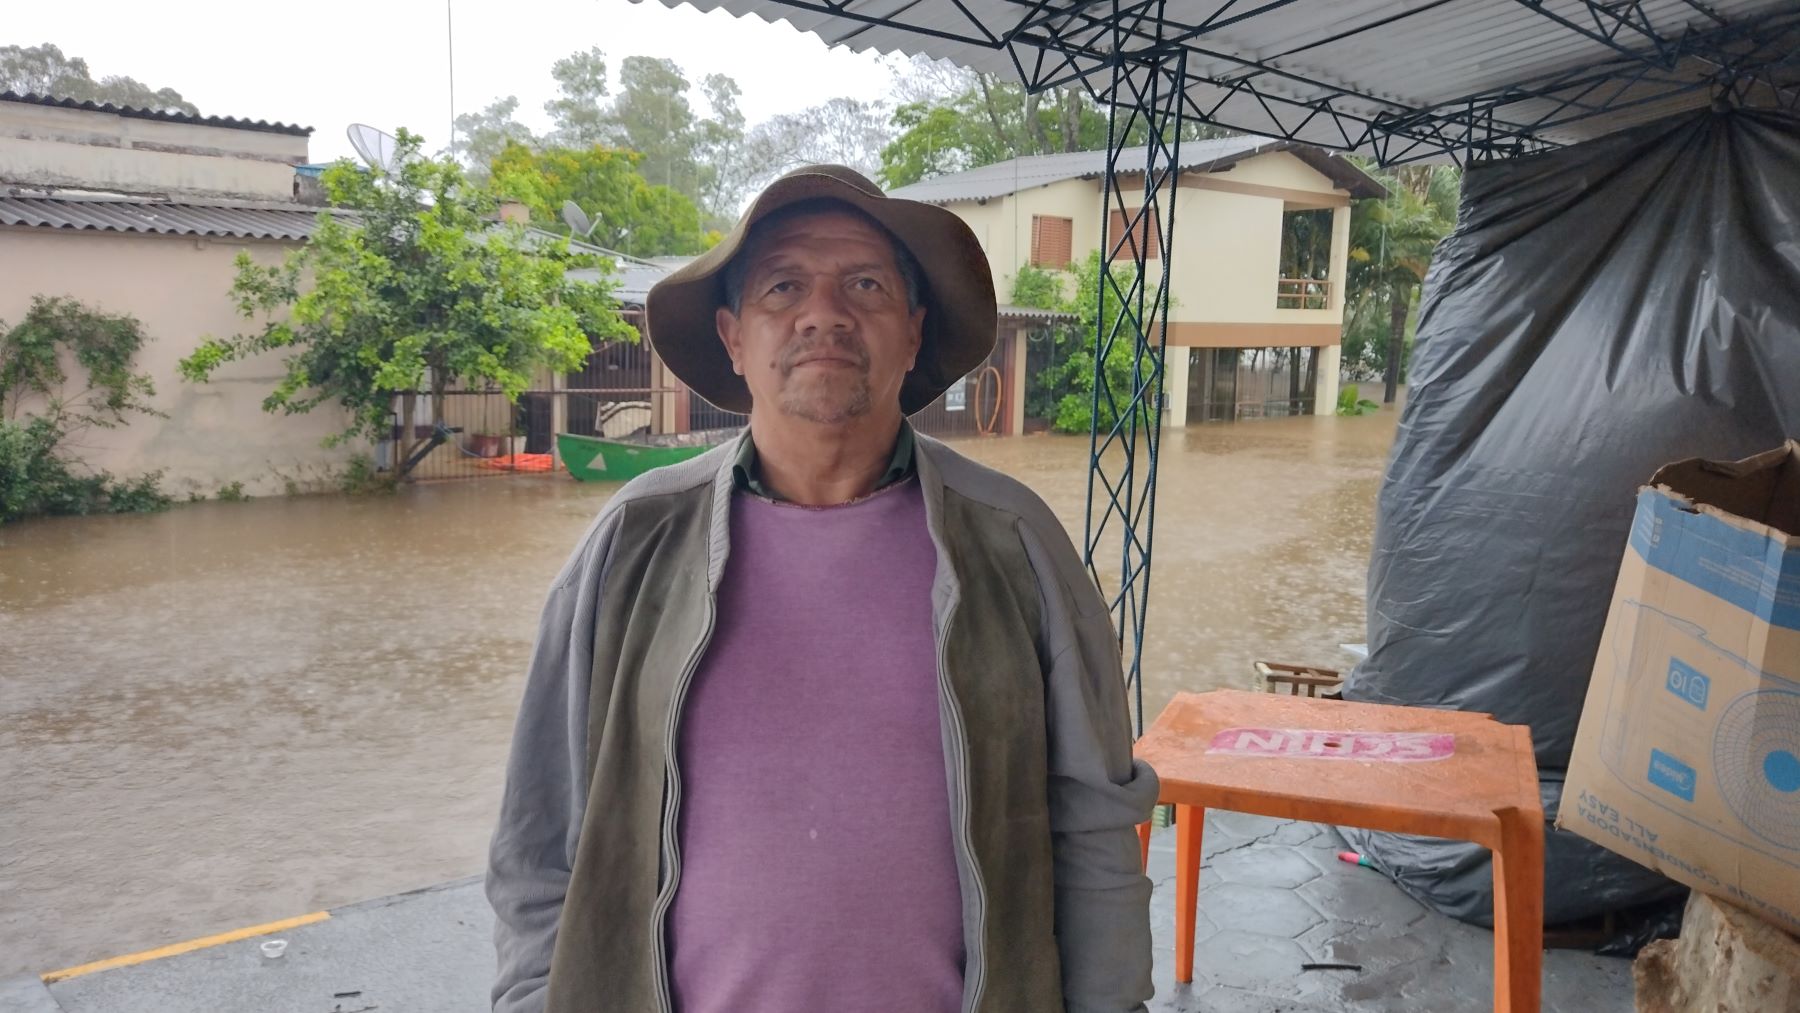 O comerciante José Luís em área inundada de São Borja: "essas enchentes afetam muito a população ribeirinha; todo mundo que mora aqui tem que sair de casa" (Foto: Micael Olegário)